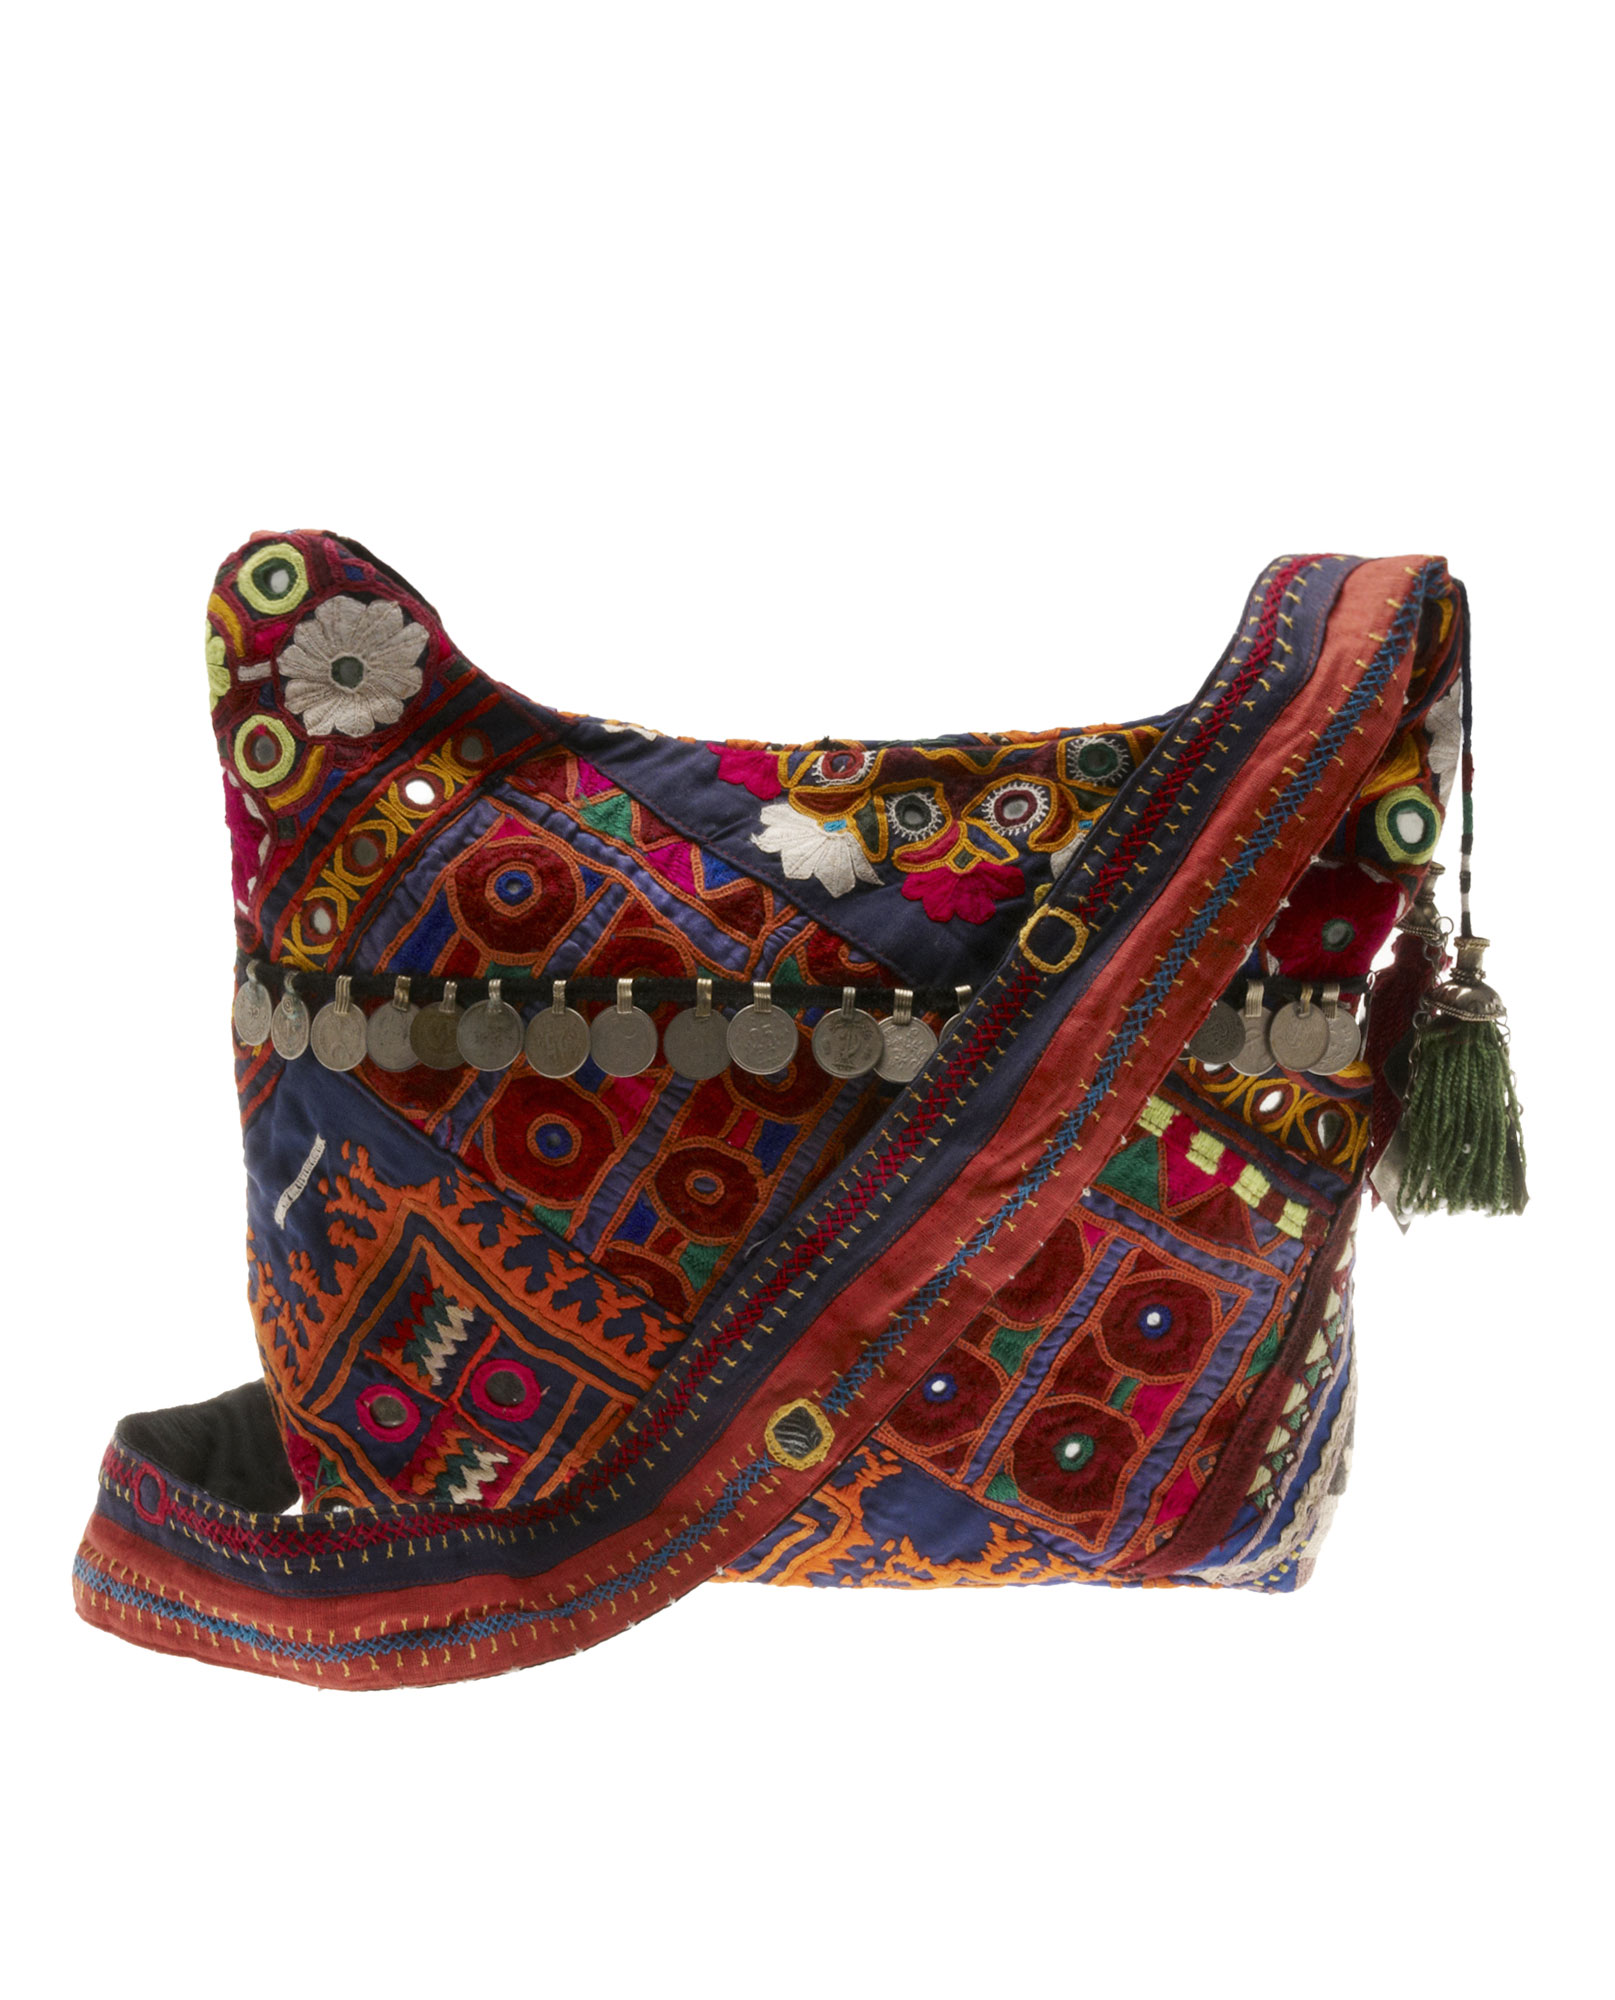 Simone Camille Hand-embellished Vintage Messenger Bag in Multicolor ...